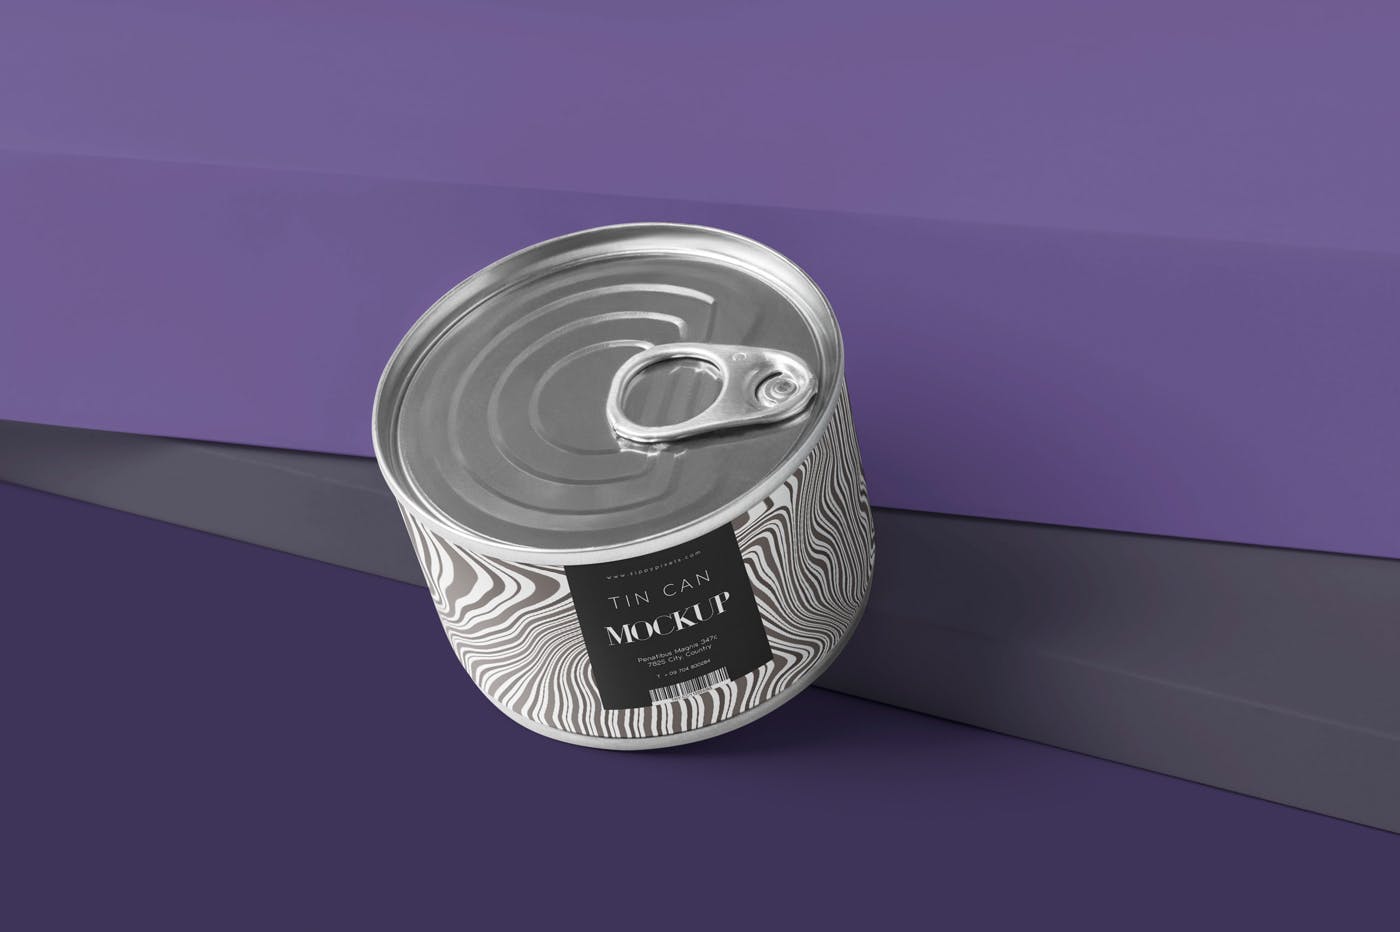 食品罐头外观设计效果图样机PSD模板 Small Food Tin Can Mockups插图(1)